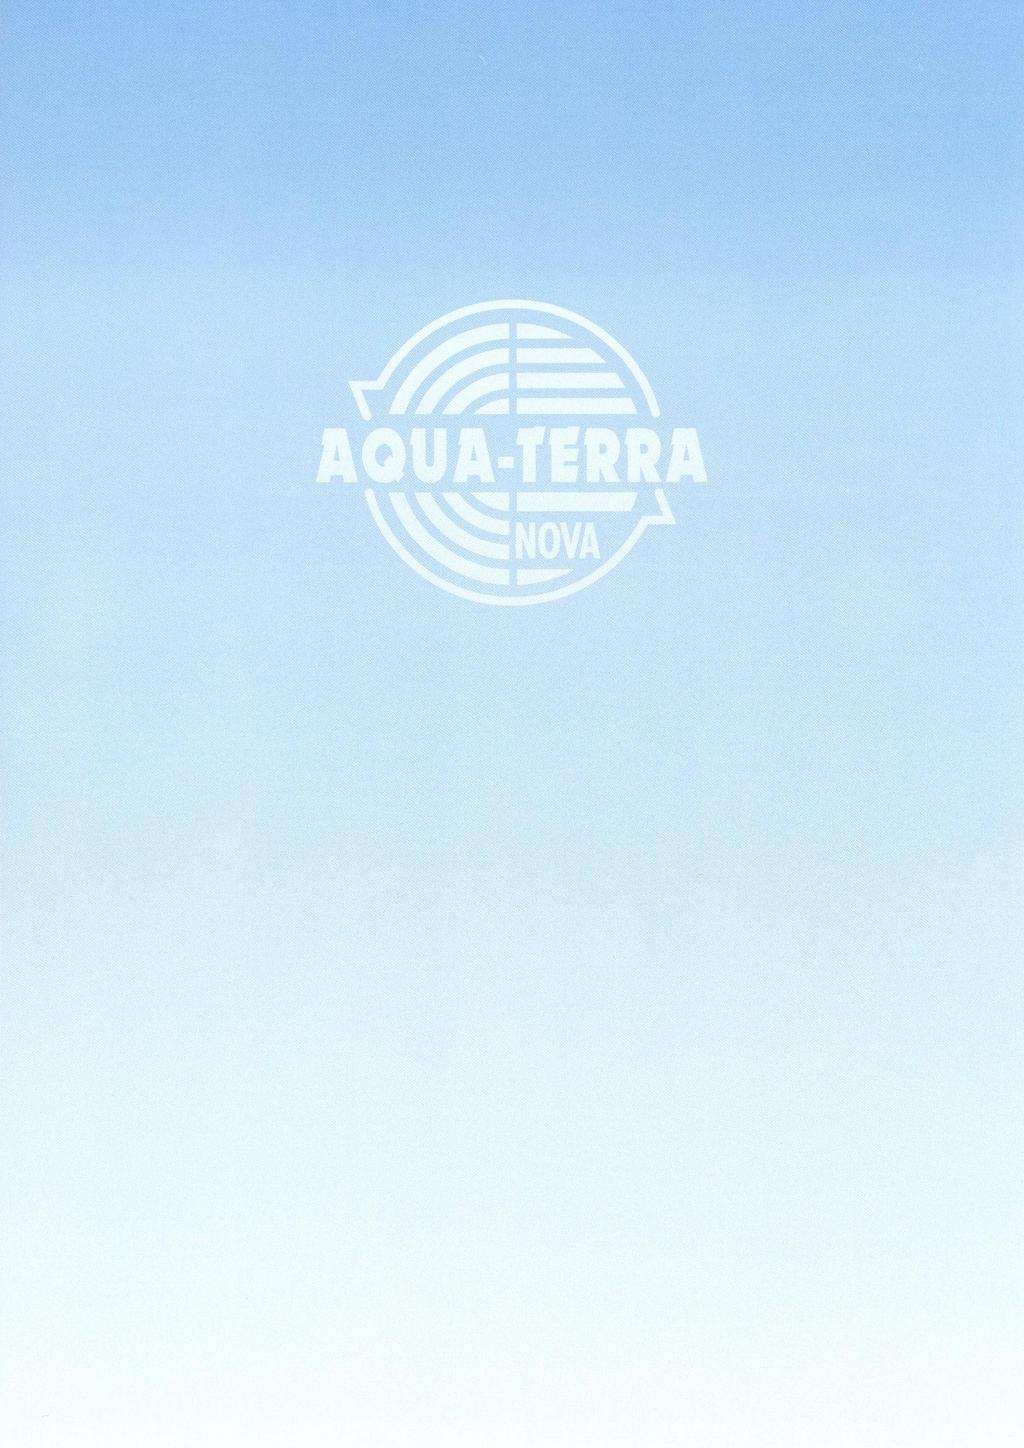 217033/Aqua-Terra Nova 301d WT/AW